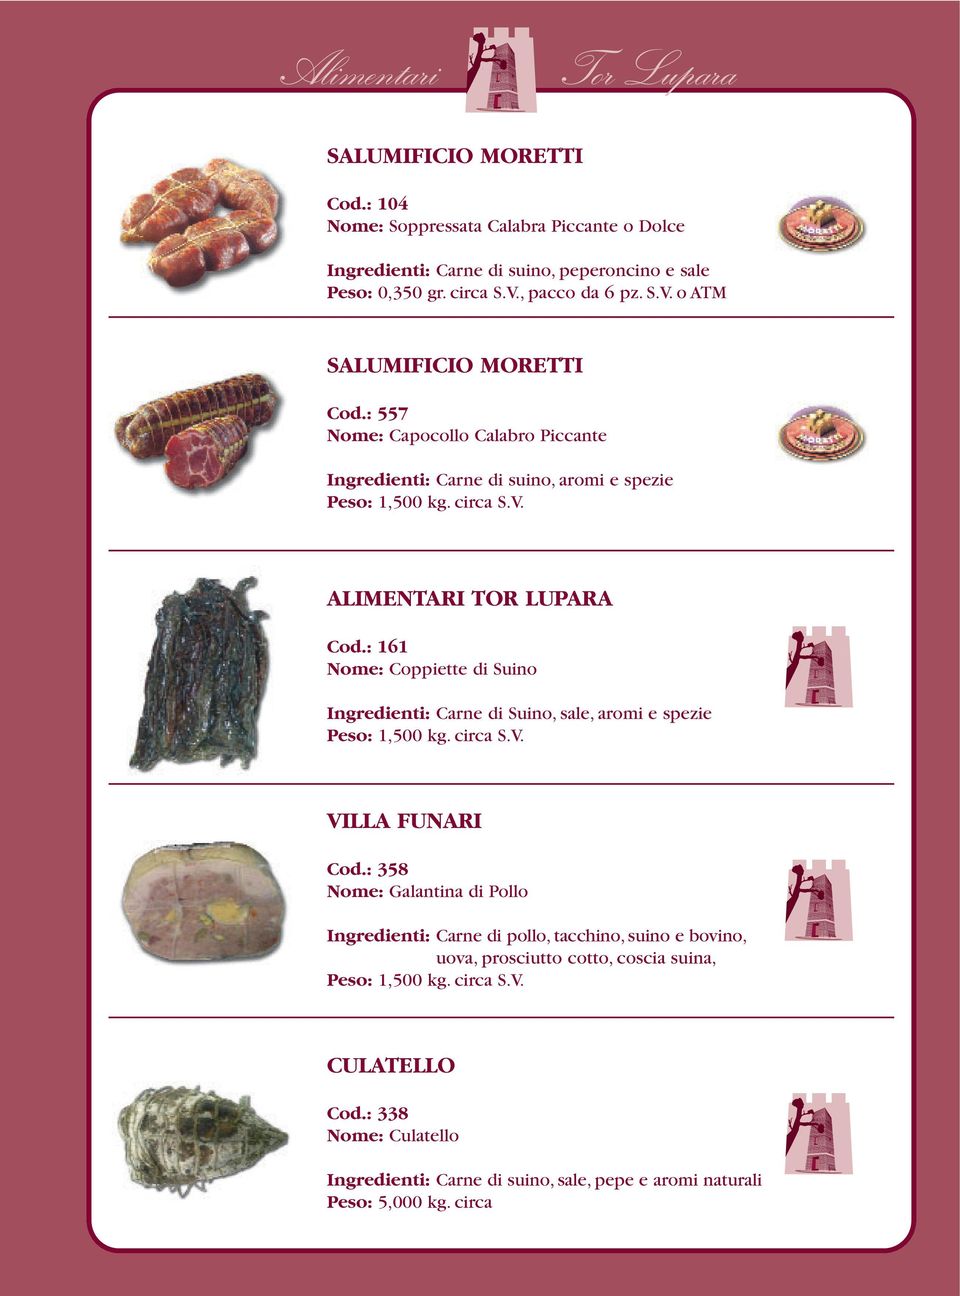 : 161 Nome: Coppiette di Suino Ingredienti: Carne di Suino, sale, aromi e spezie Peso: 1,500 kg. circa S.V. VILLA FUNARI Cod.